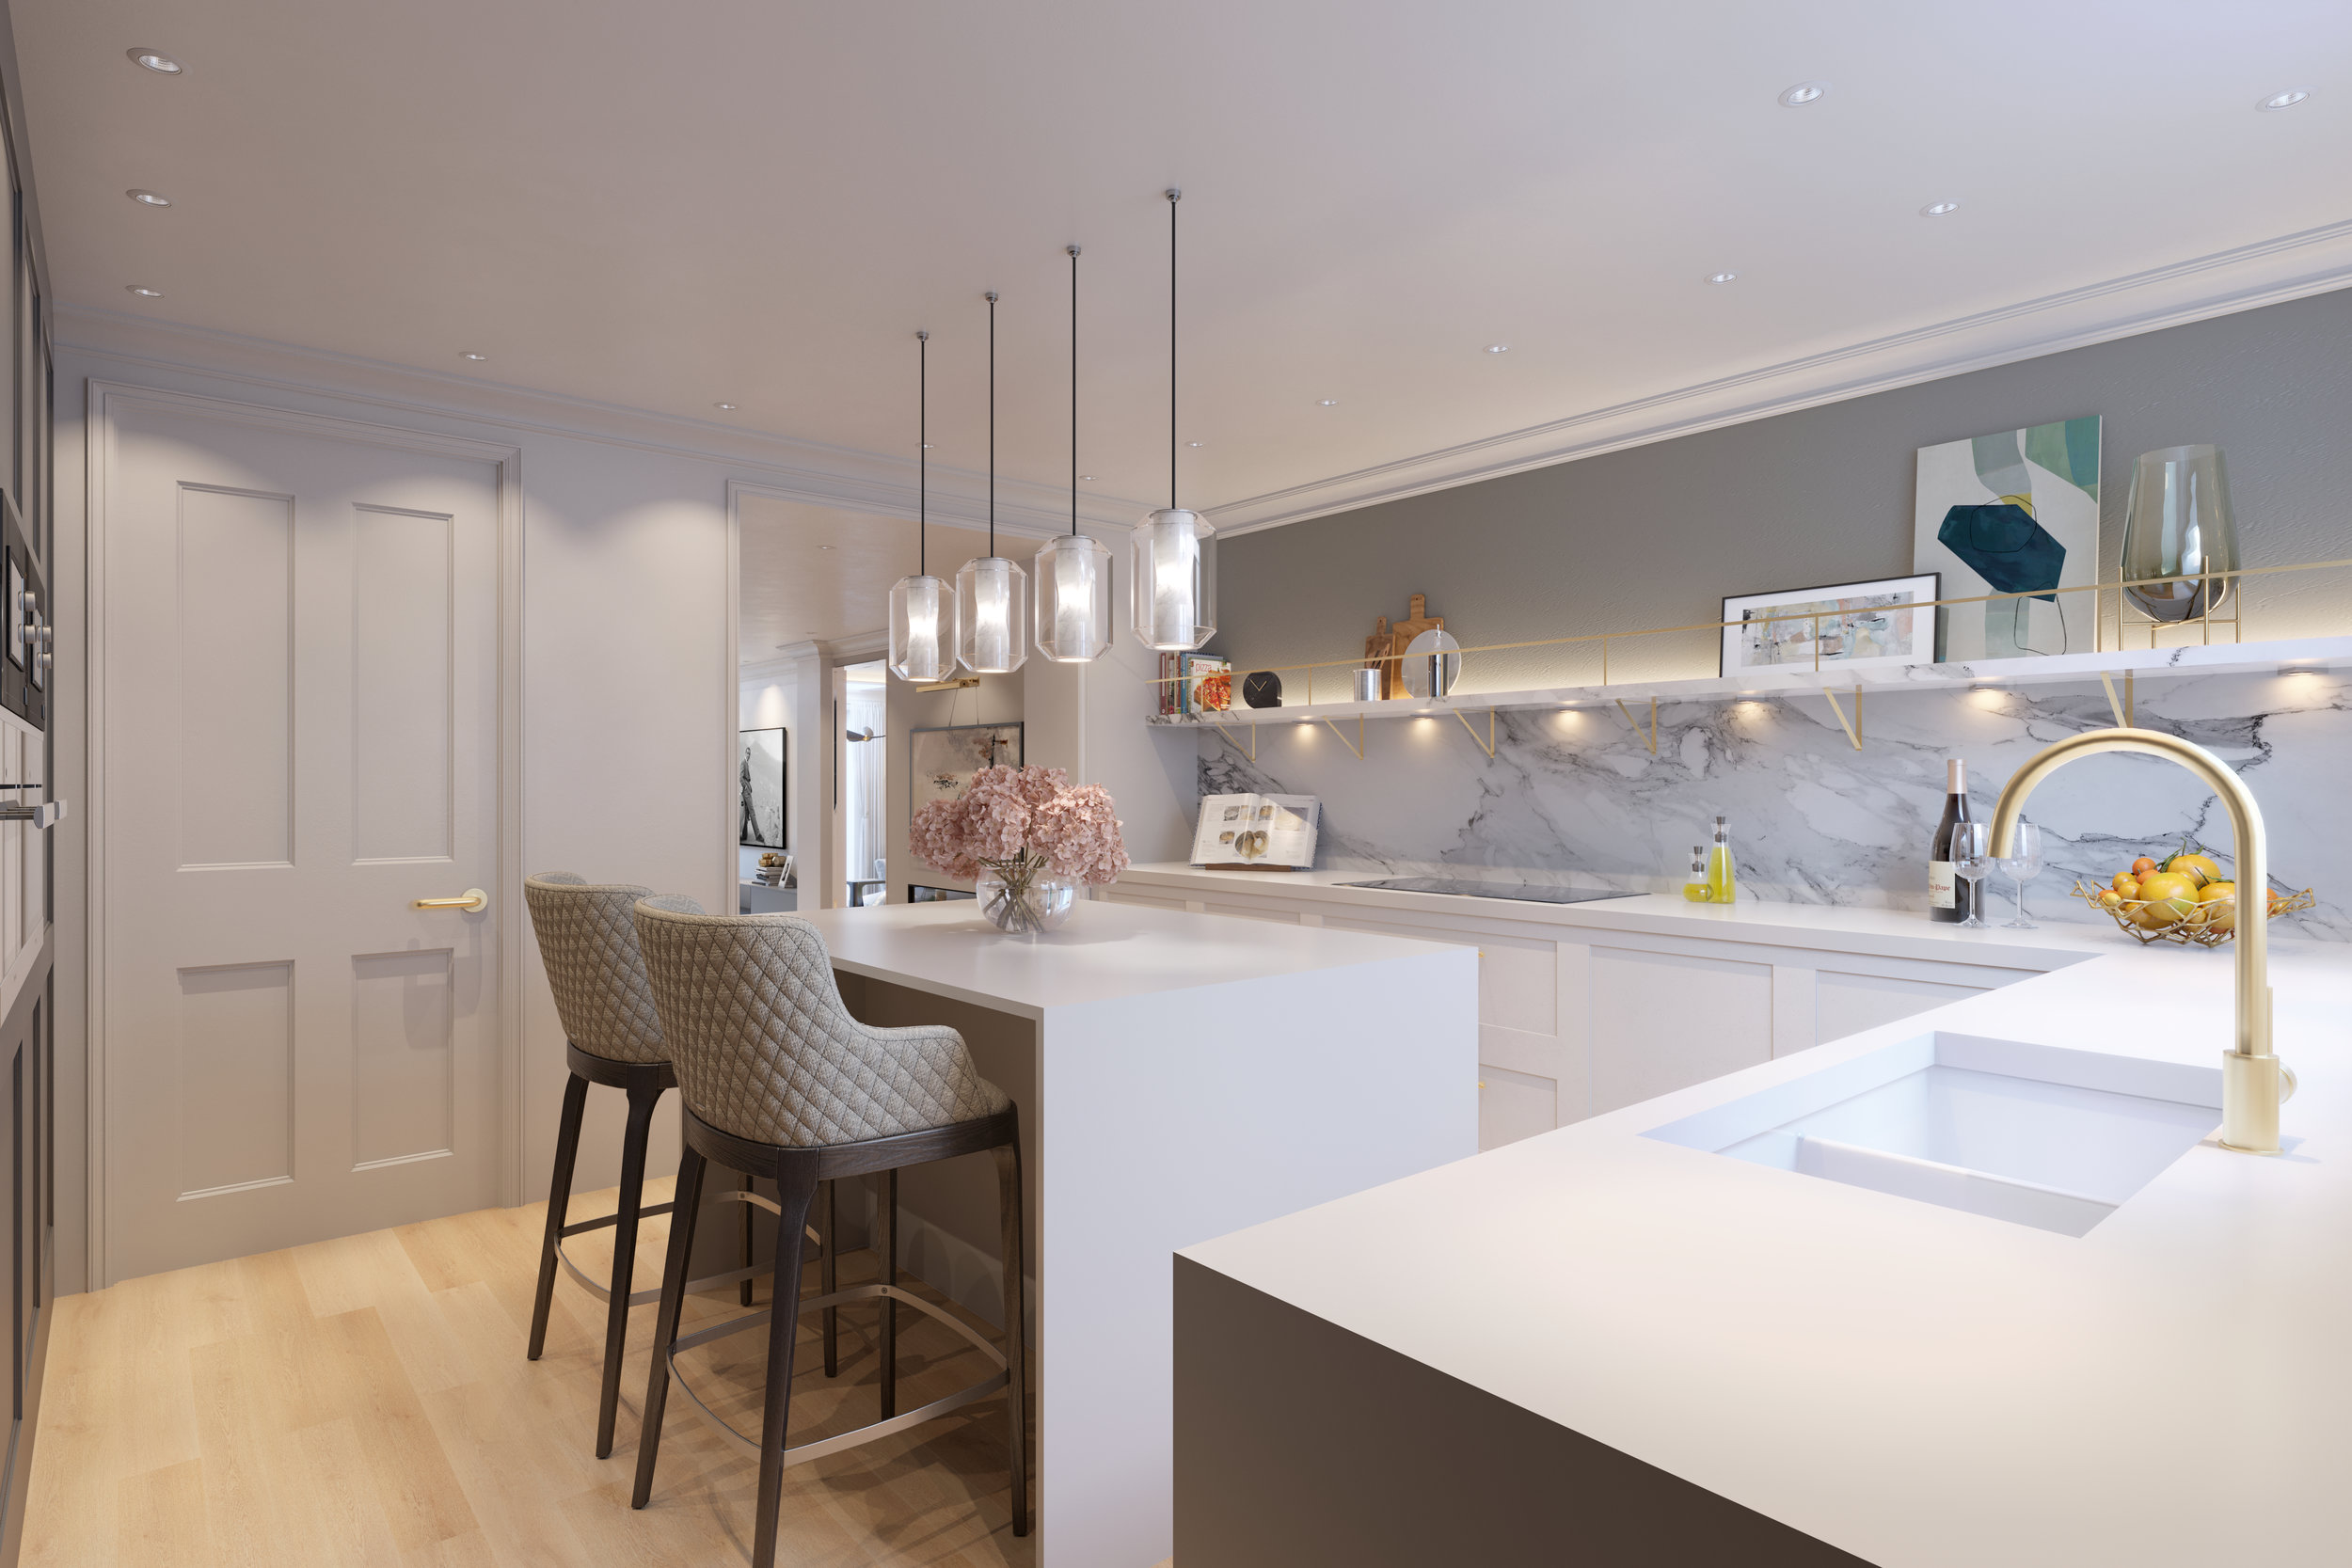 Unit4 Interior Designer Residential Concept Visuals CGI Artist in London